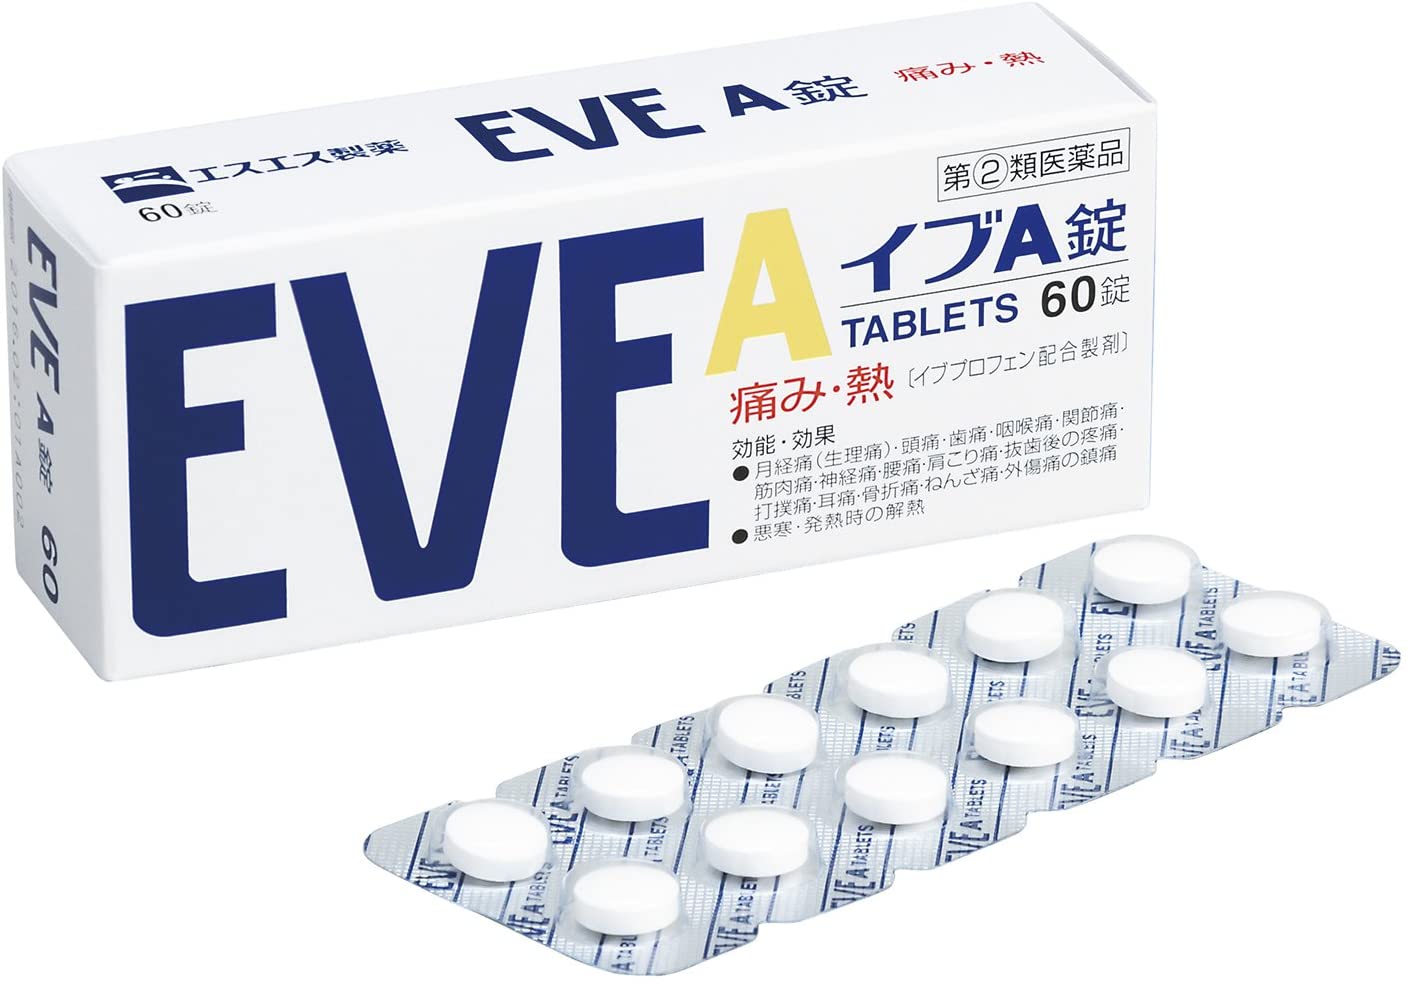 Японские препараты купить. Японские таблетки Eve. Eve обезболивающие таблетки Япония. Японские таблетки от головной боли Eve. Eve quick таблетки из Японии.